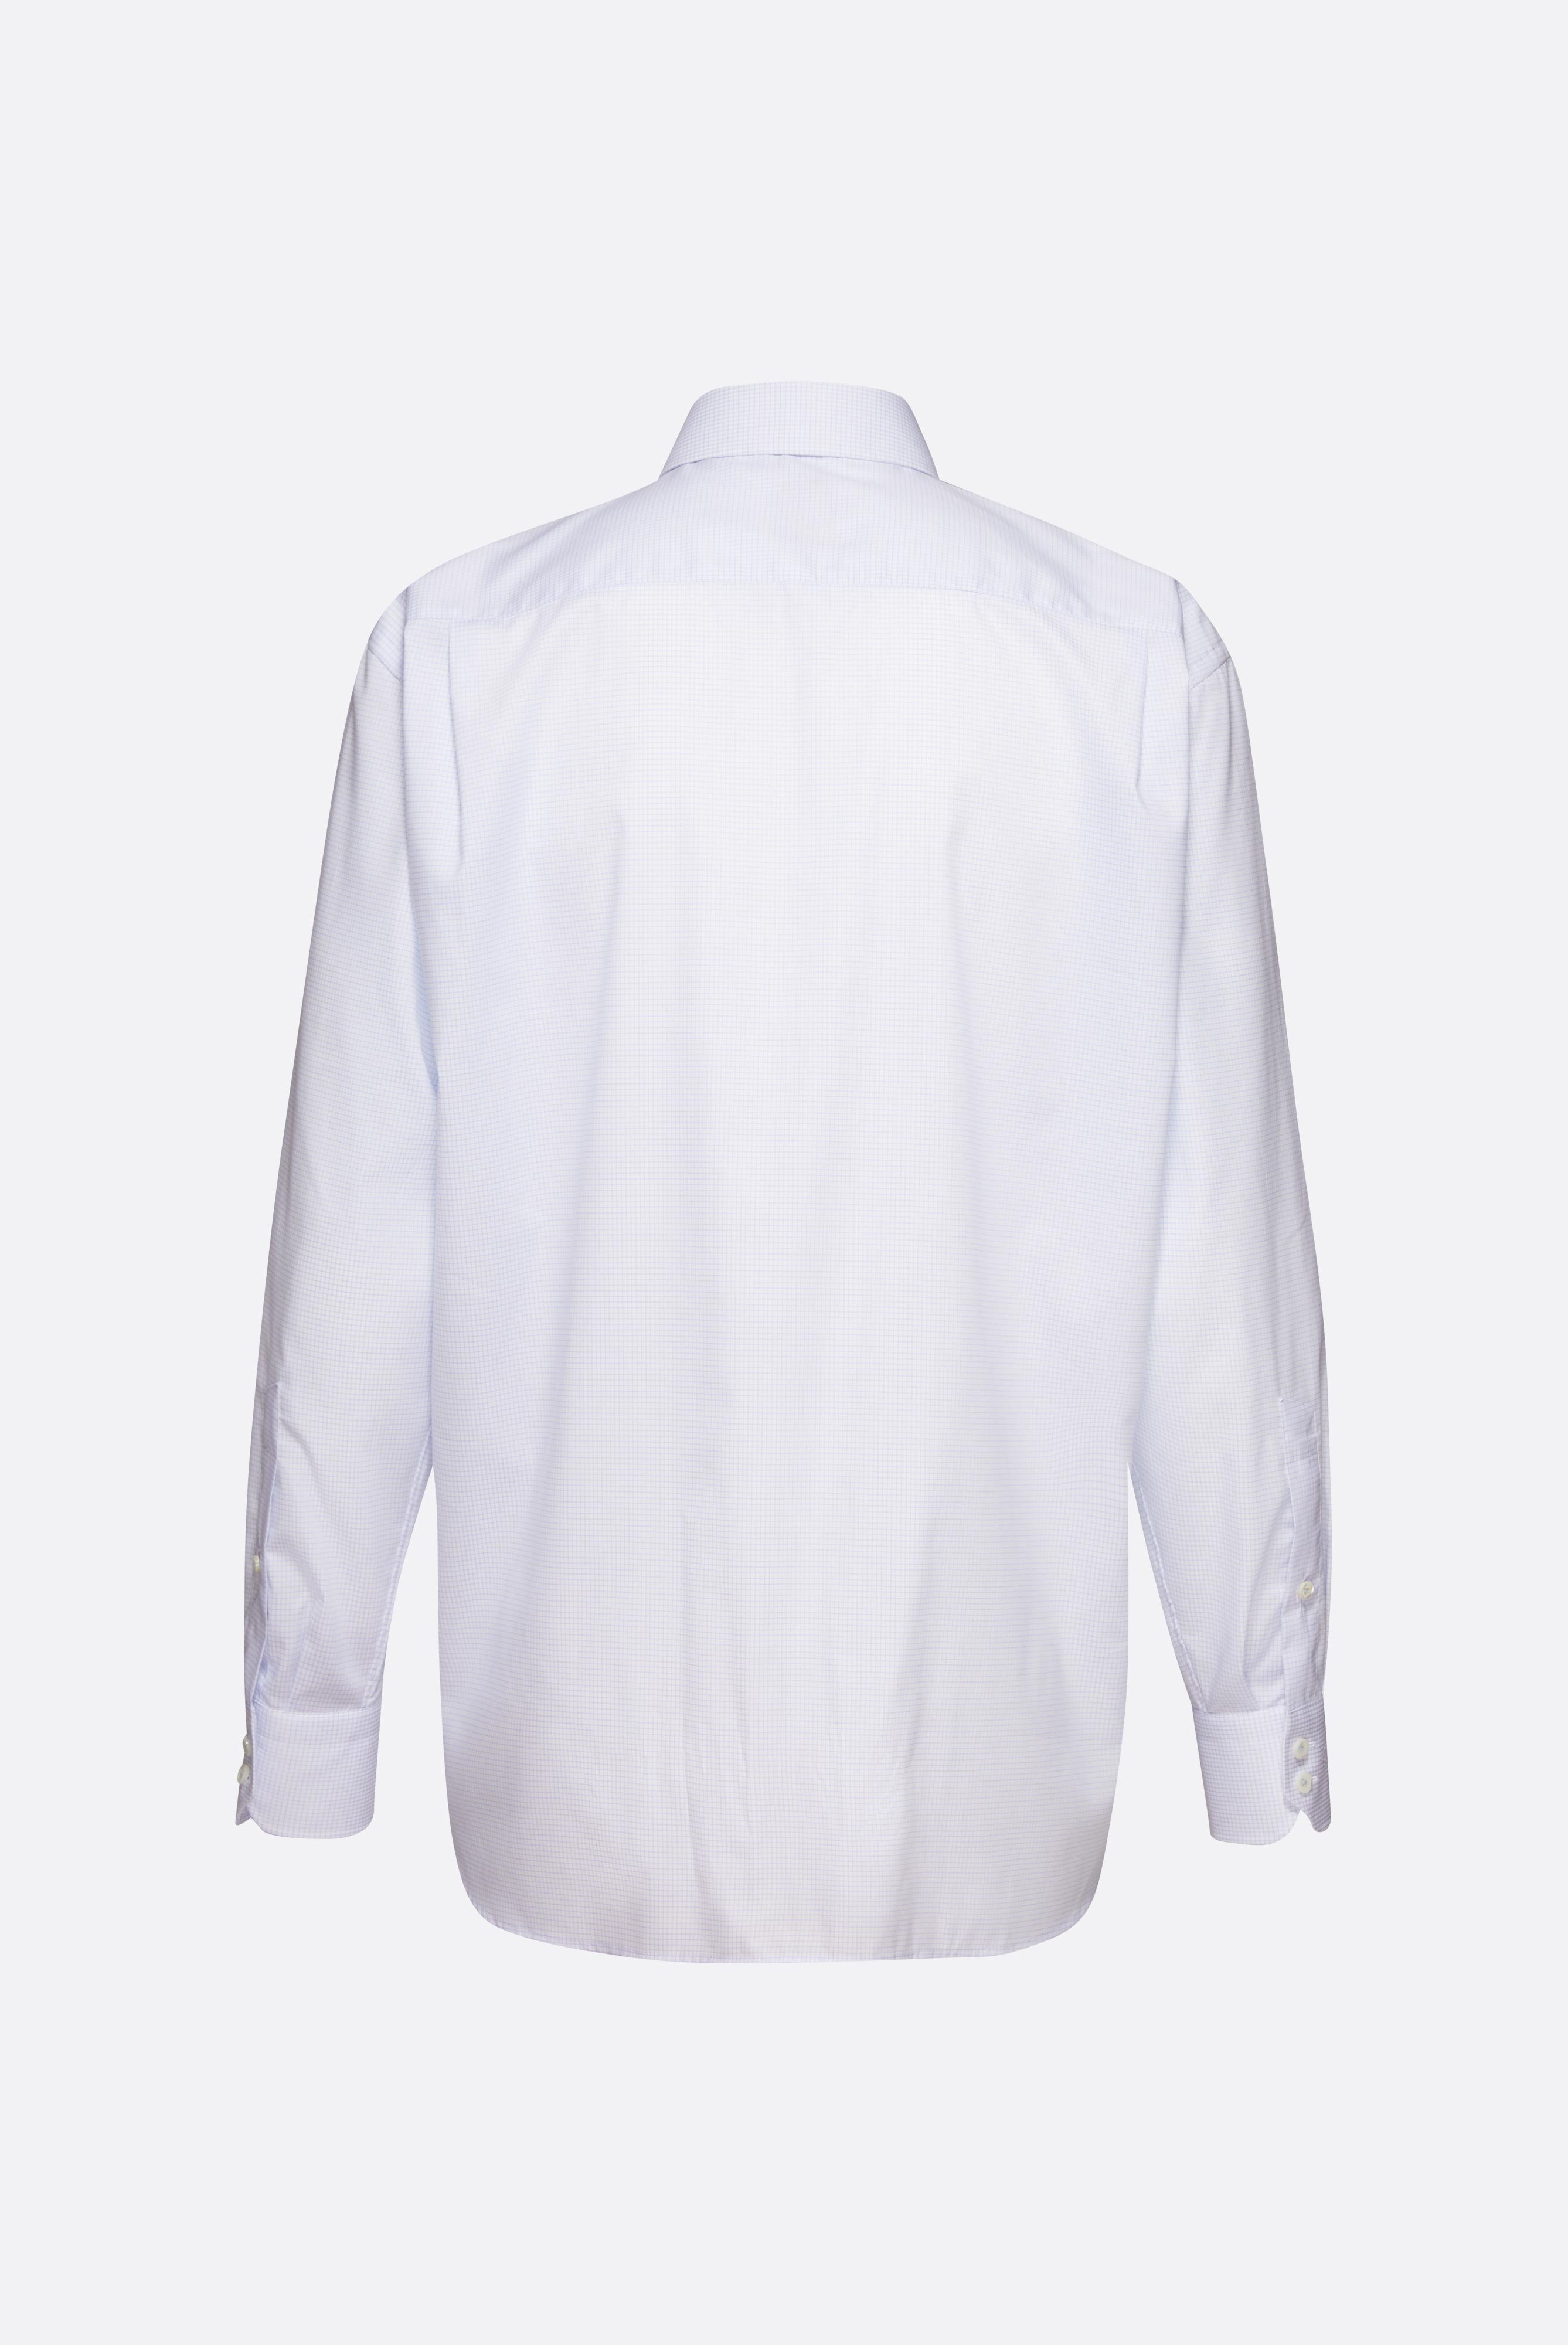 Bügelleichte Hemden+Kariertes Bügelfreies Hemd Comfort Fit+20.2021.BQ.151782.720.42